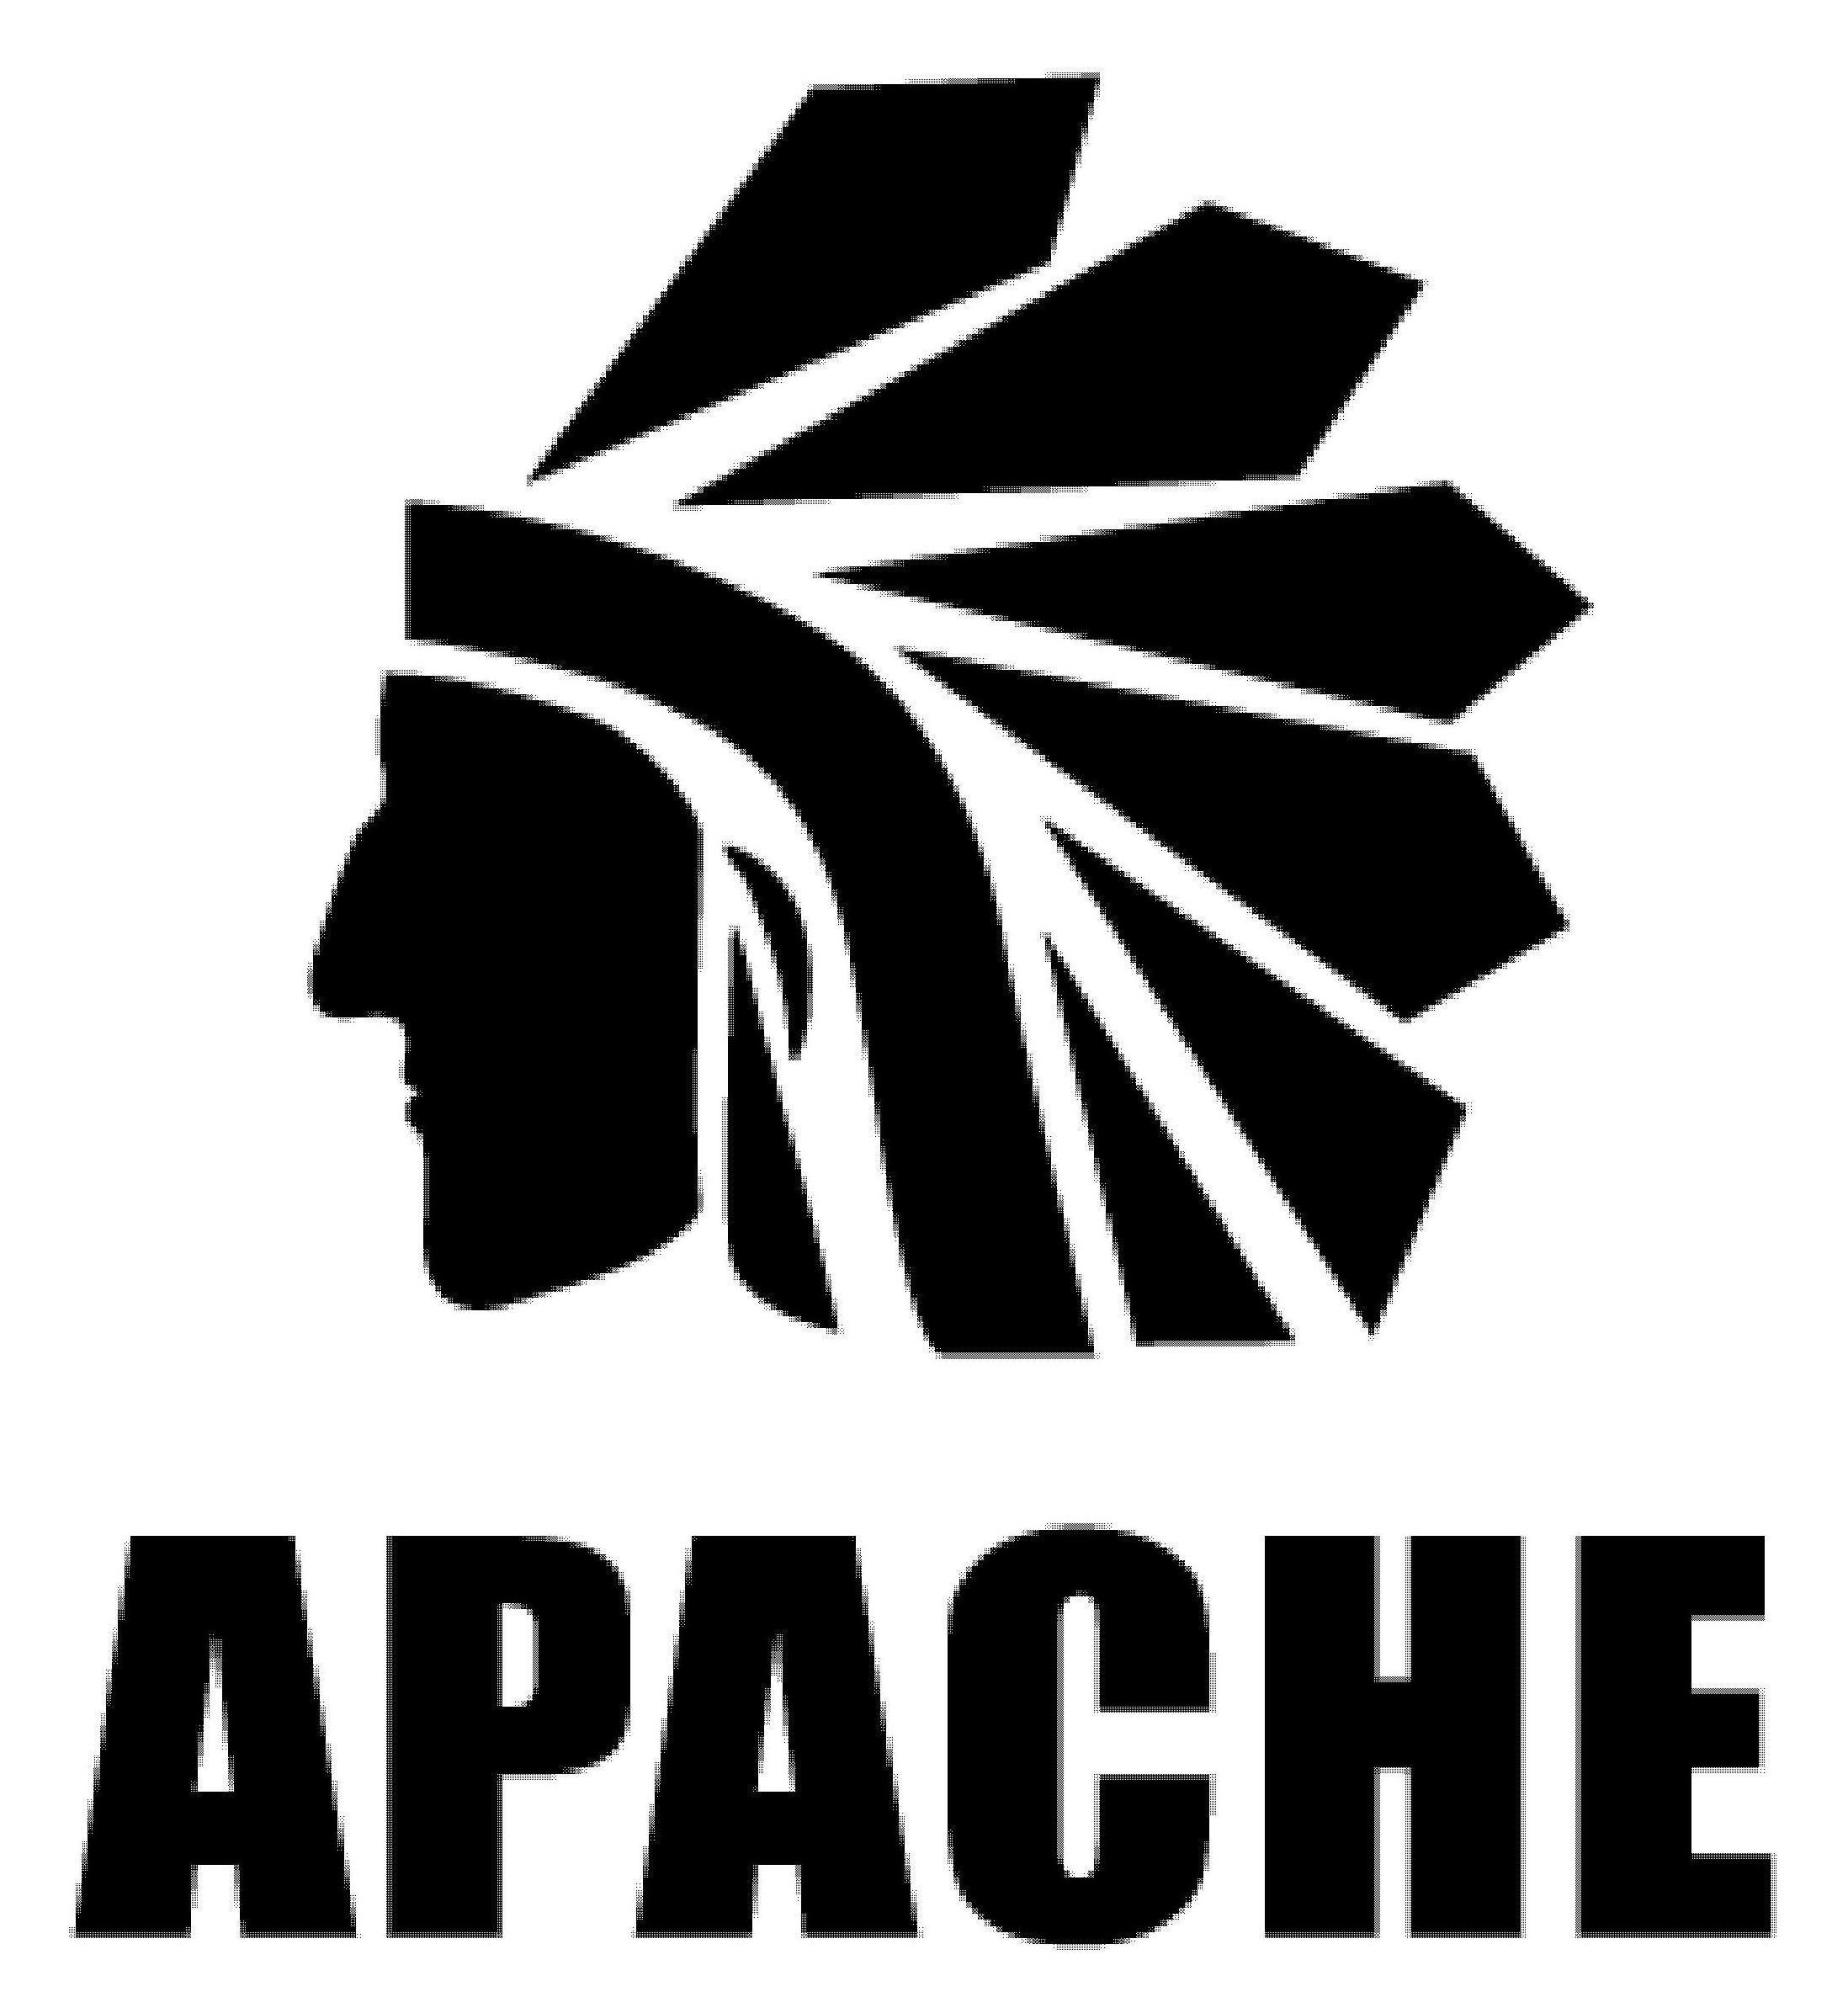 APACHE